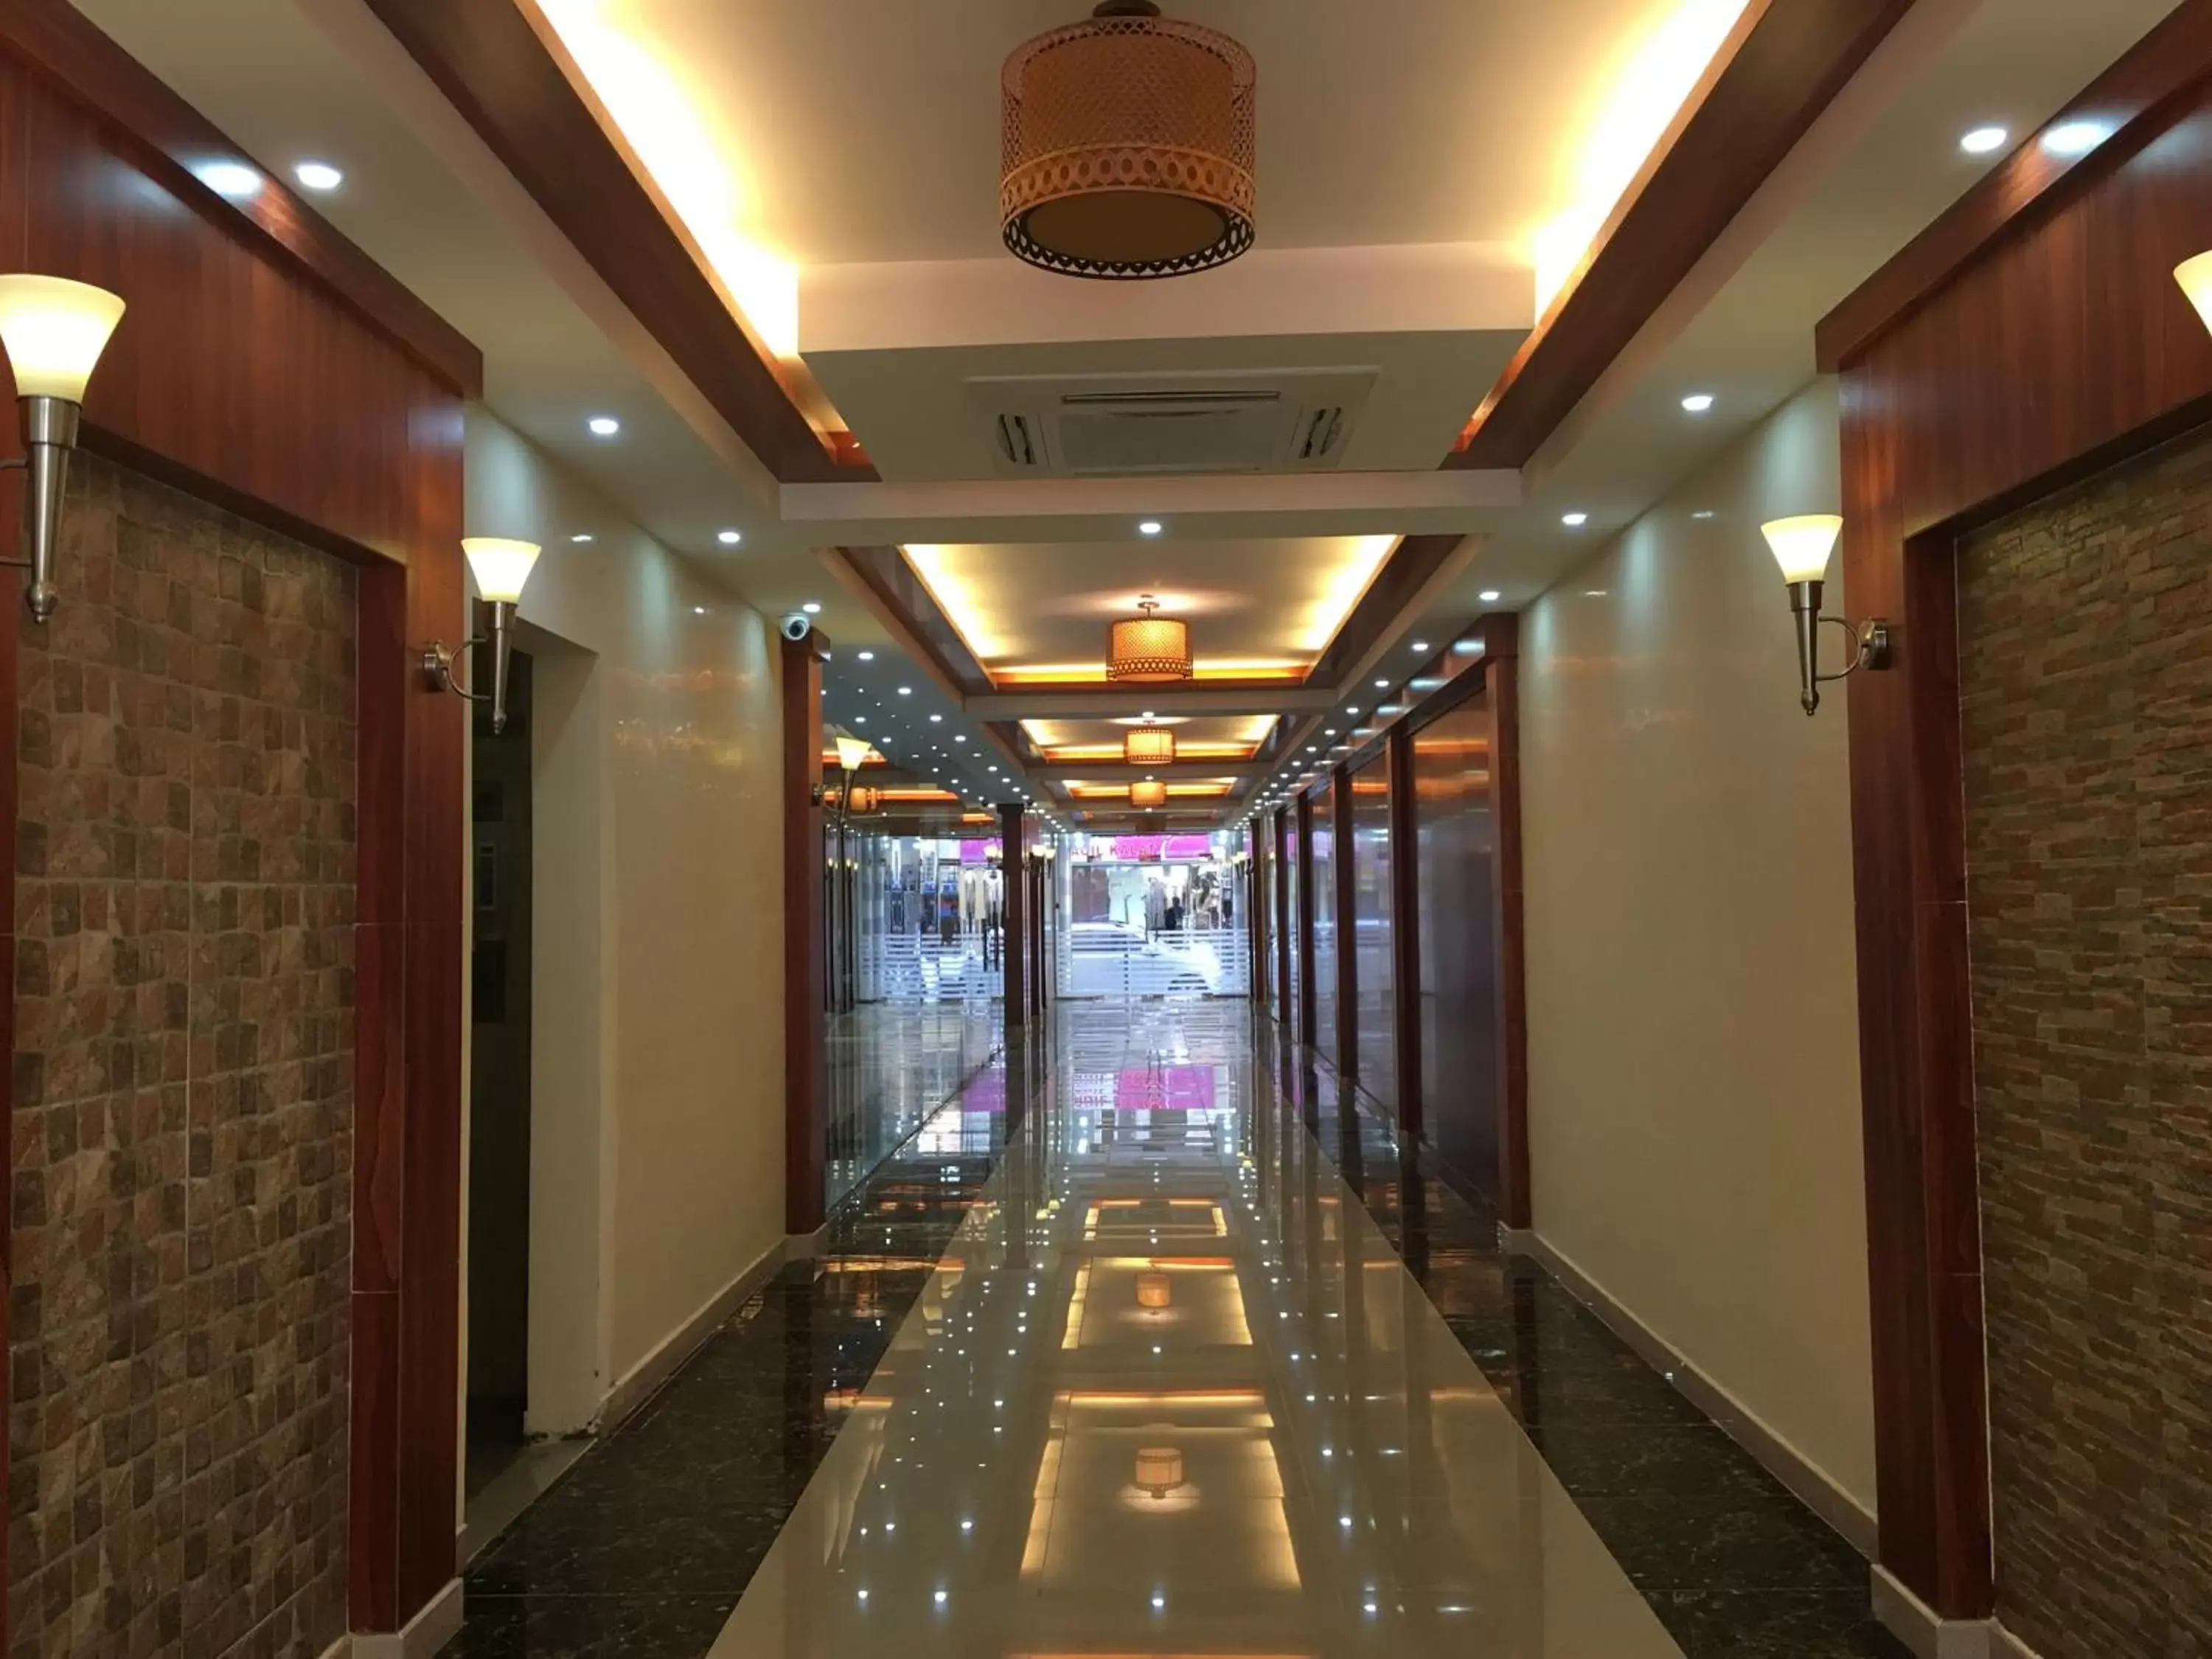 Lobby or reception in Royal Tulip Hotel LLC